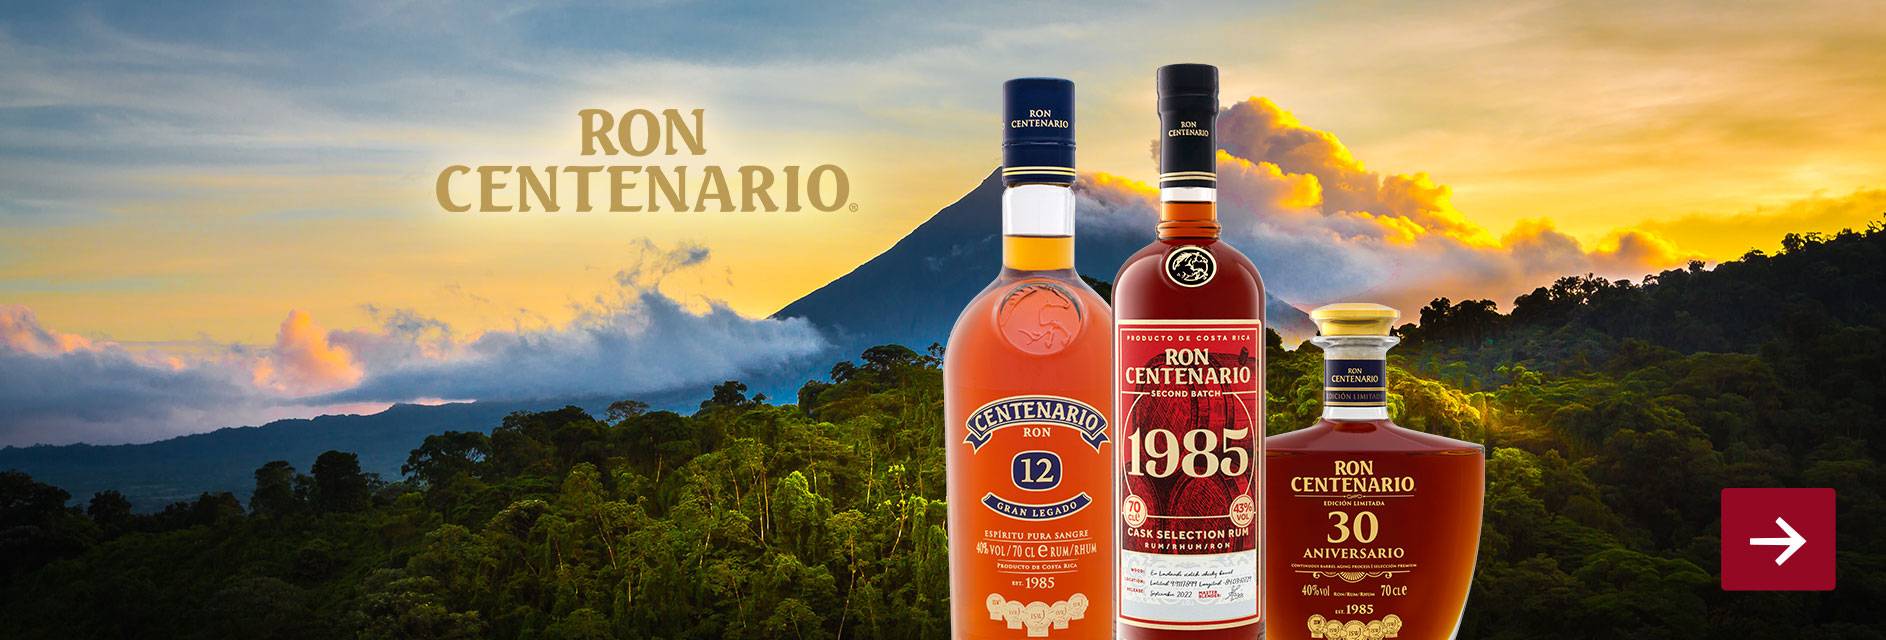 Ron Centenario 43% Vol Batch 1985 LIDL Rum | Second